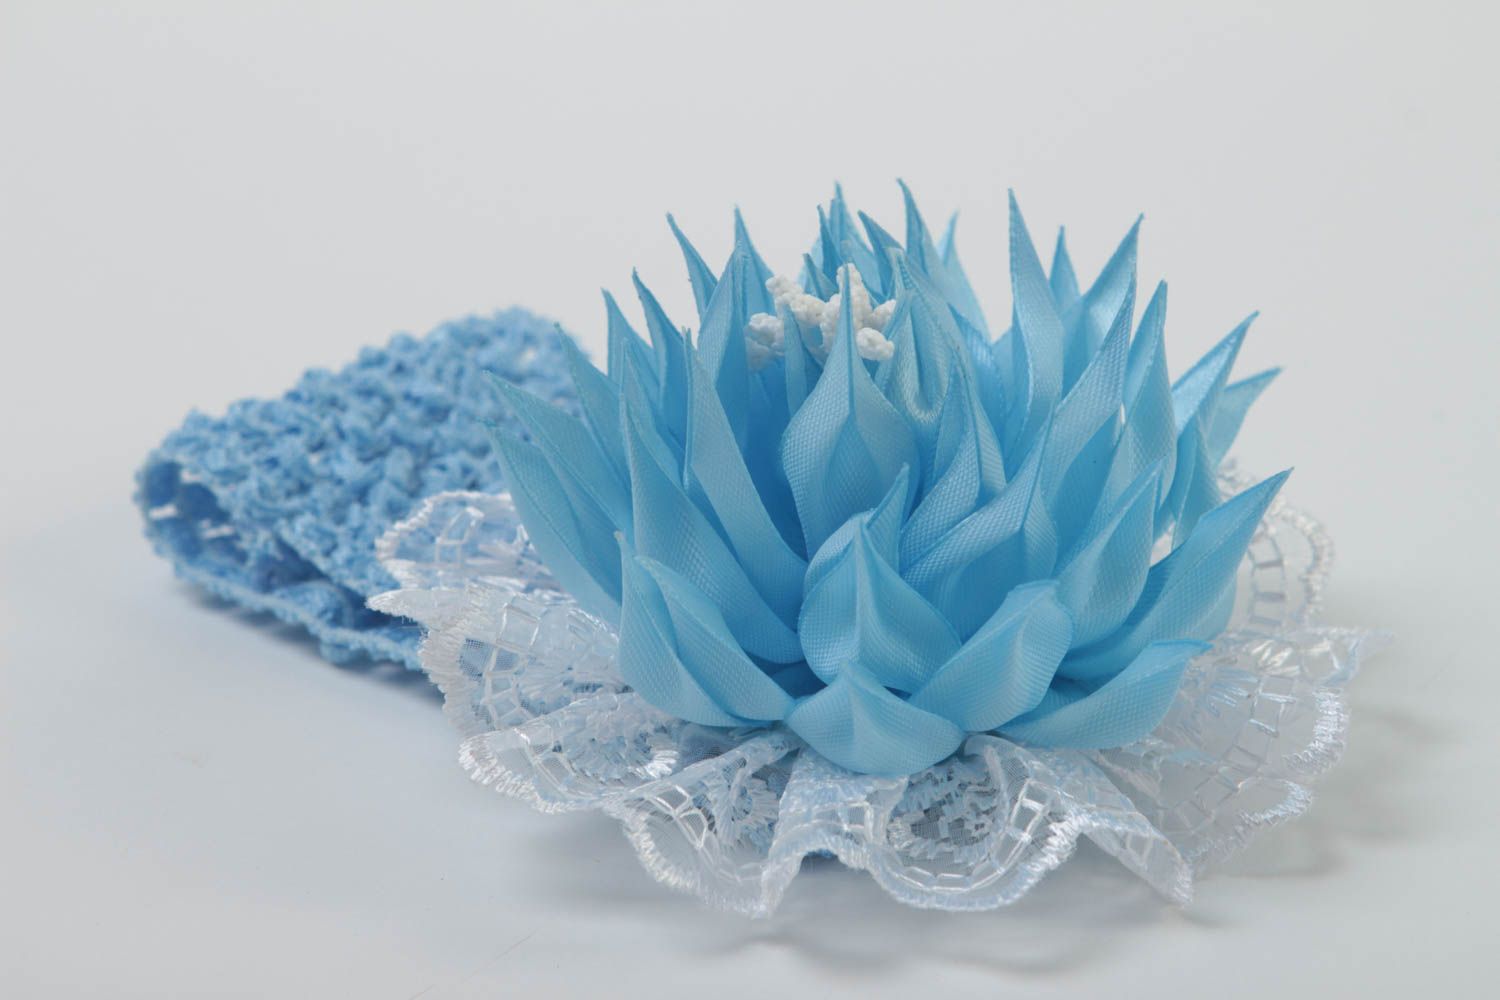 Handmade Haarband mit Blume Mädchen Haarschmuck Mode Accessoire weiß blau foto 3